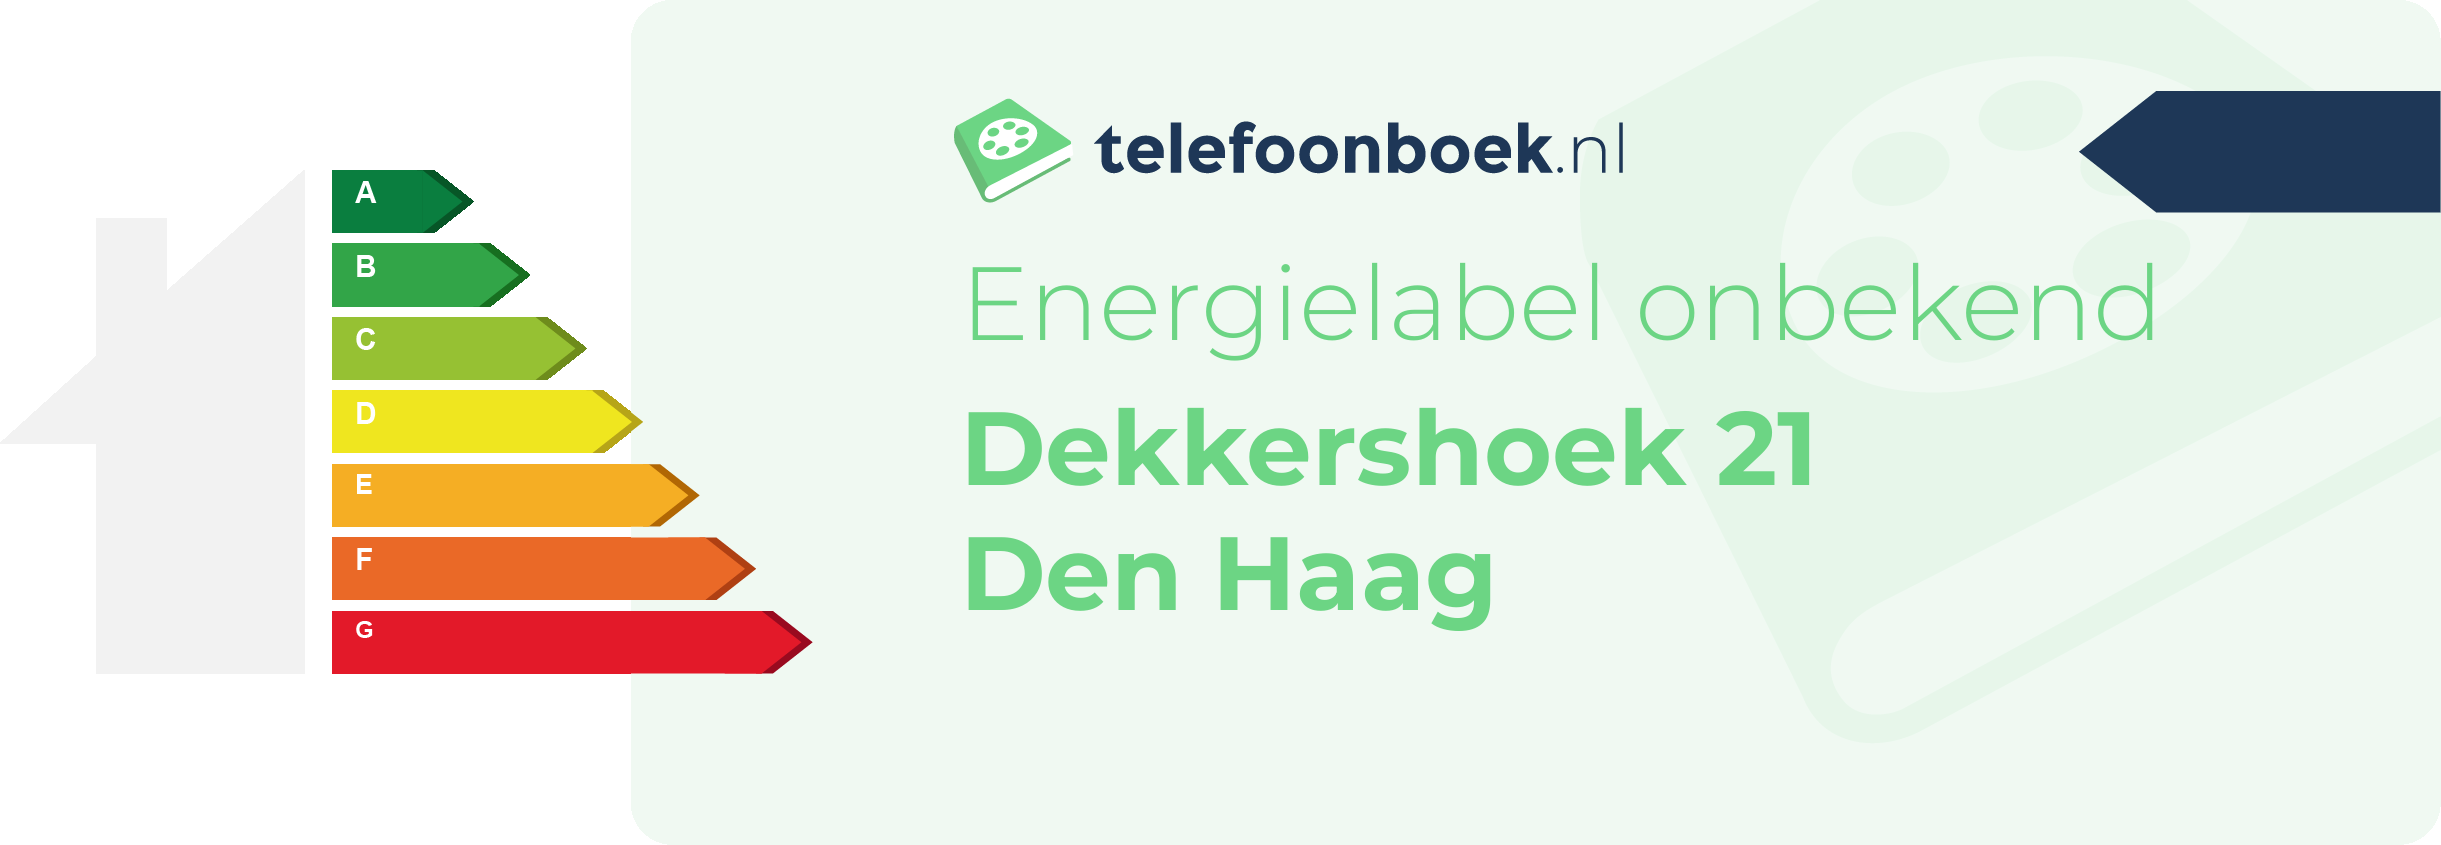 Energielabel Dekkershoek 21 Den Haag